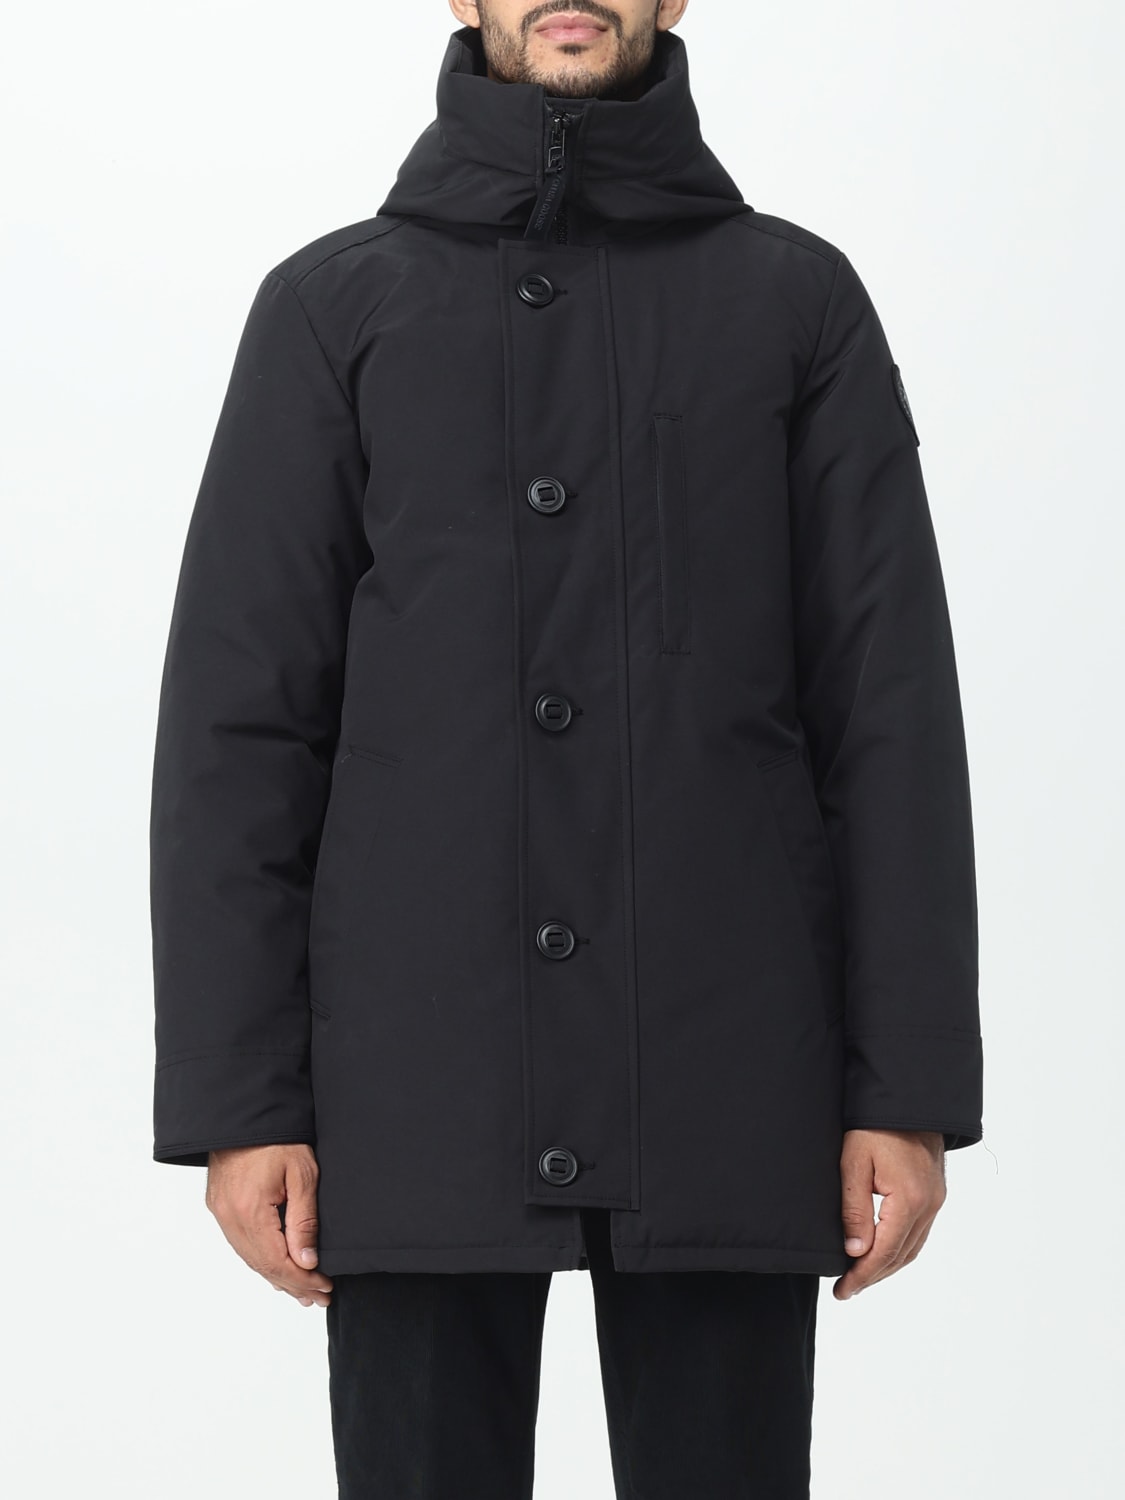 CANADA GOOSE: Coat men - Black | CANADA GOOSE jacket 2053MB online at ...